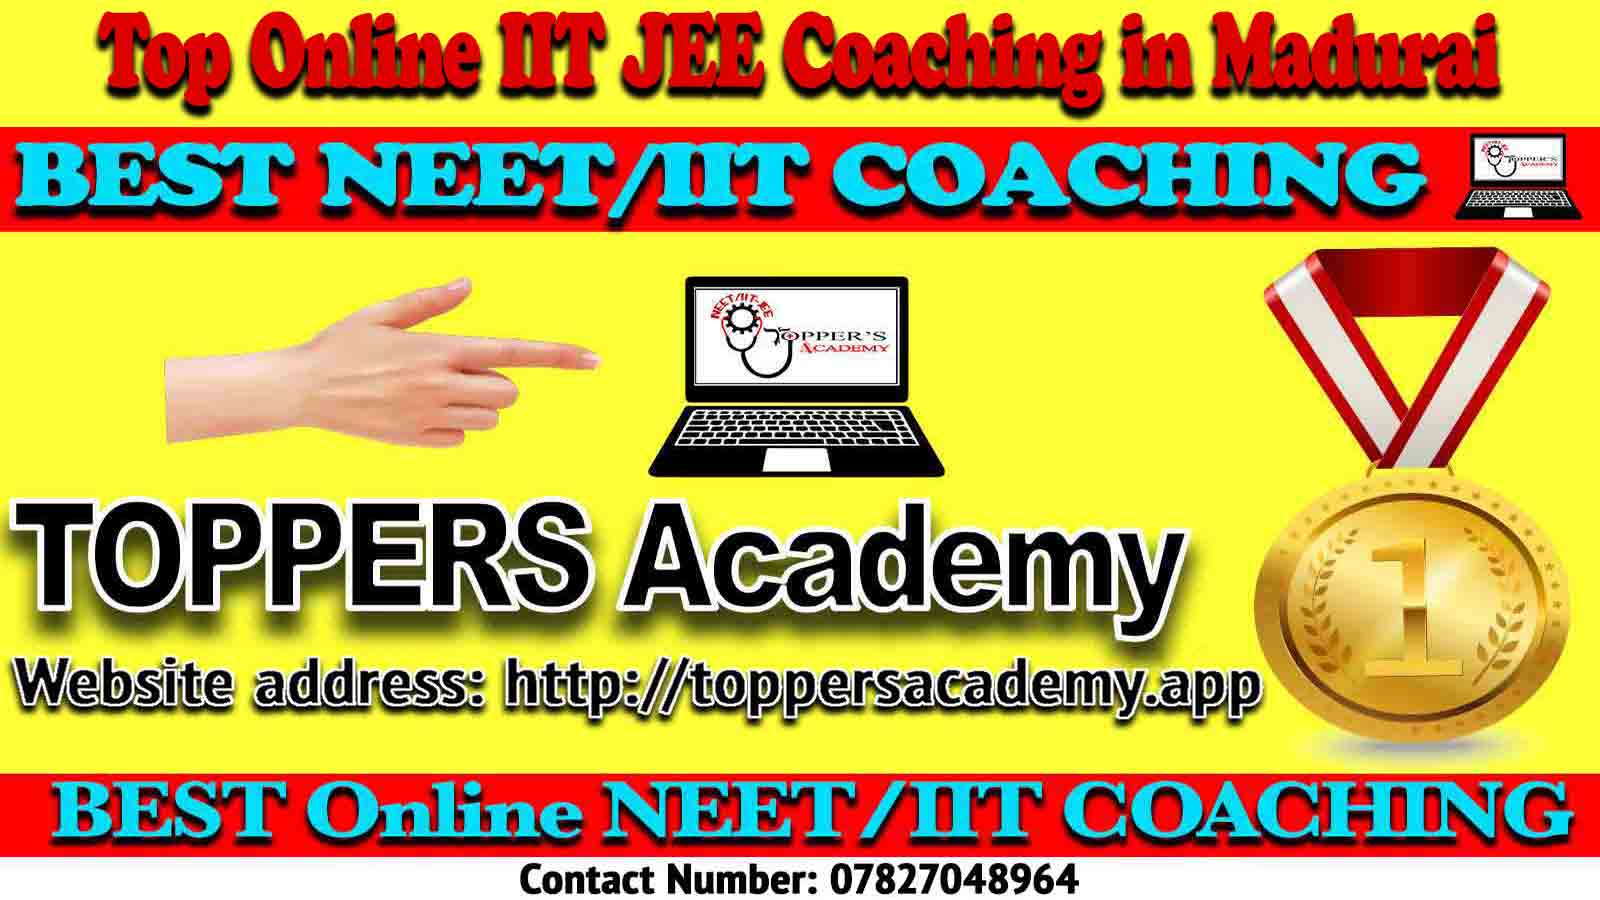 Best Online IIT JEE Coaching in Madurai